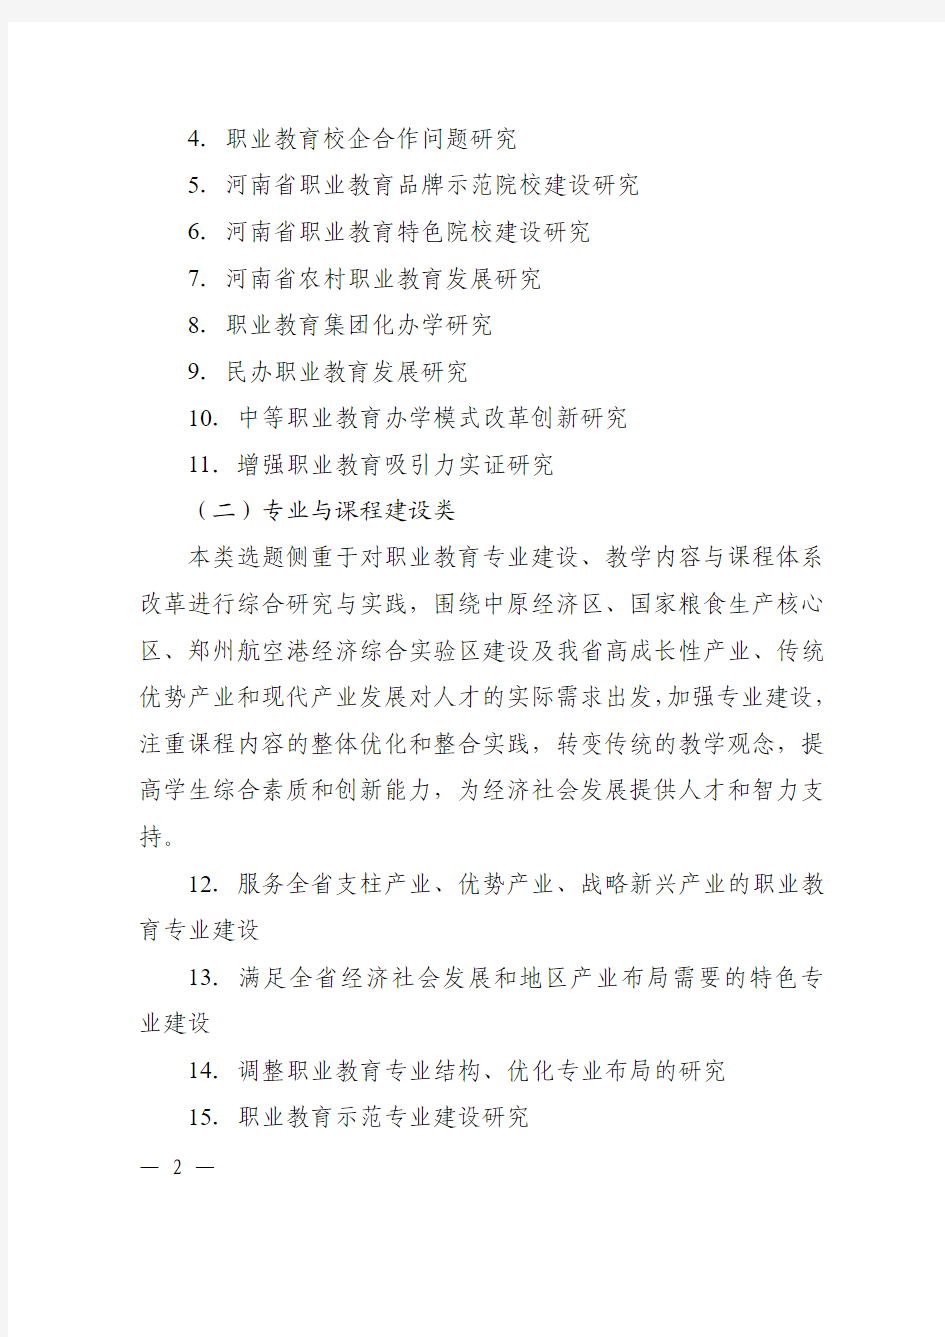 2014年河南省职业教育教学改革项目立项指南